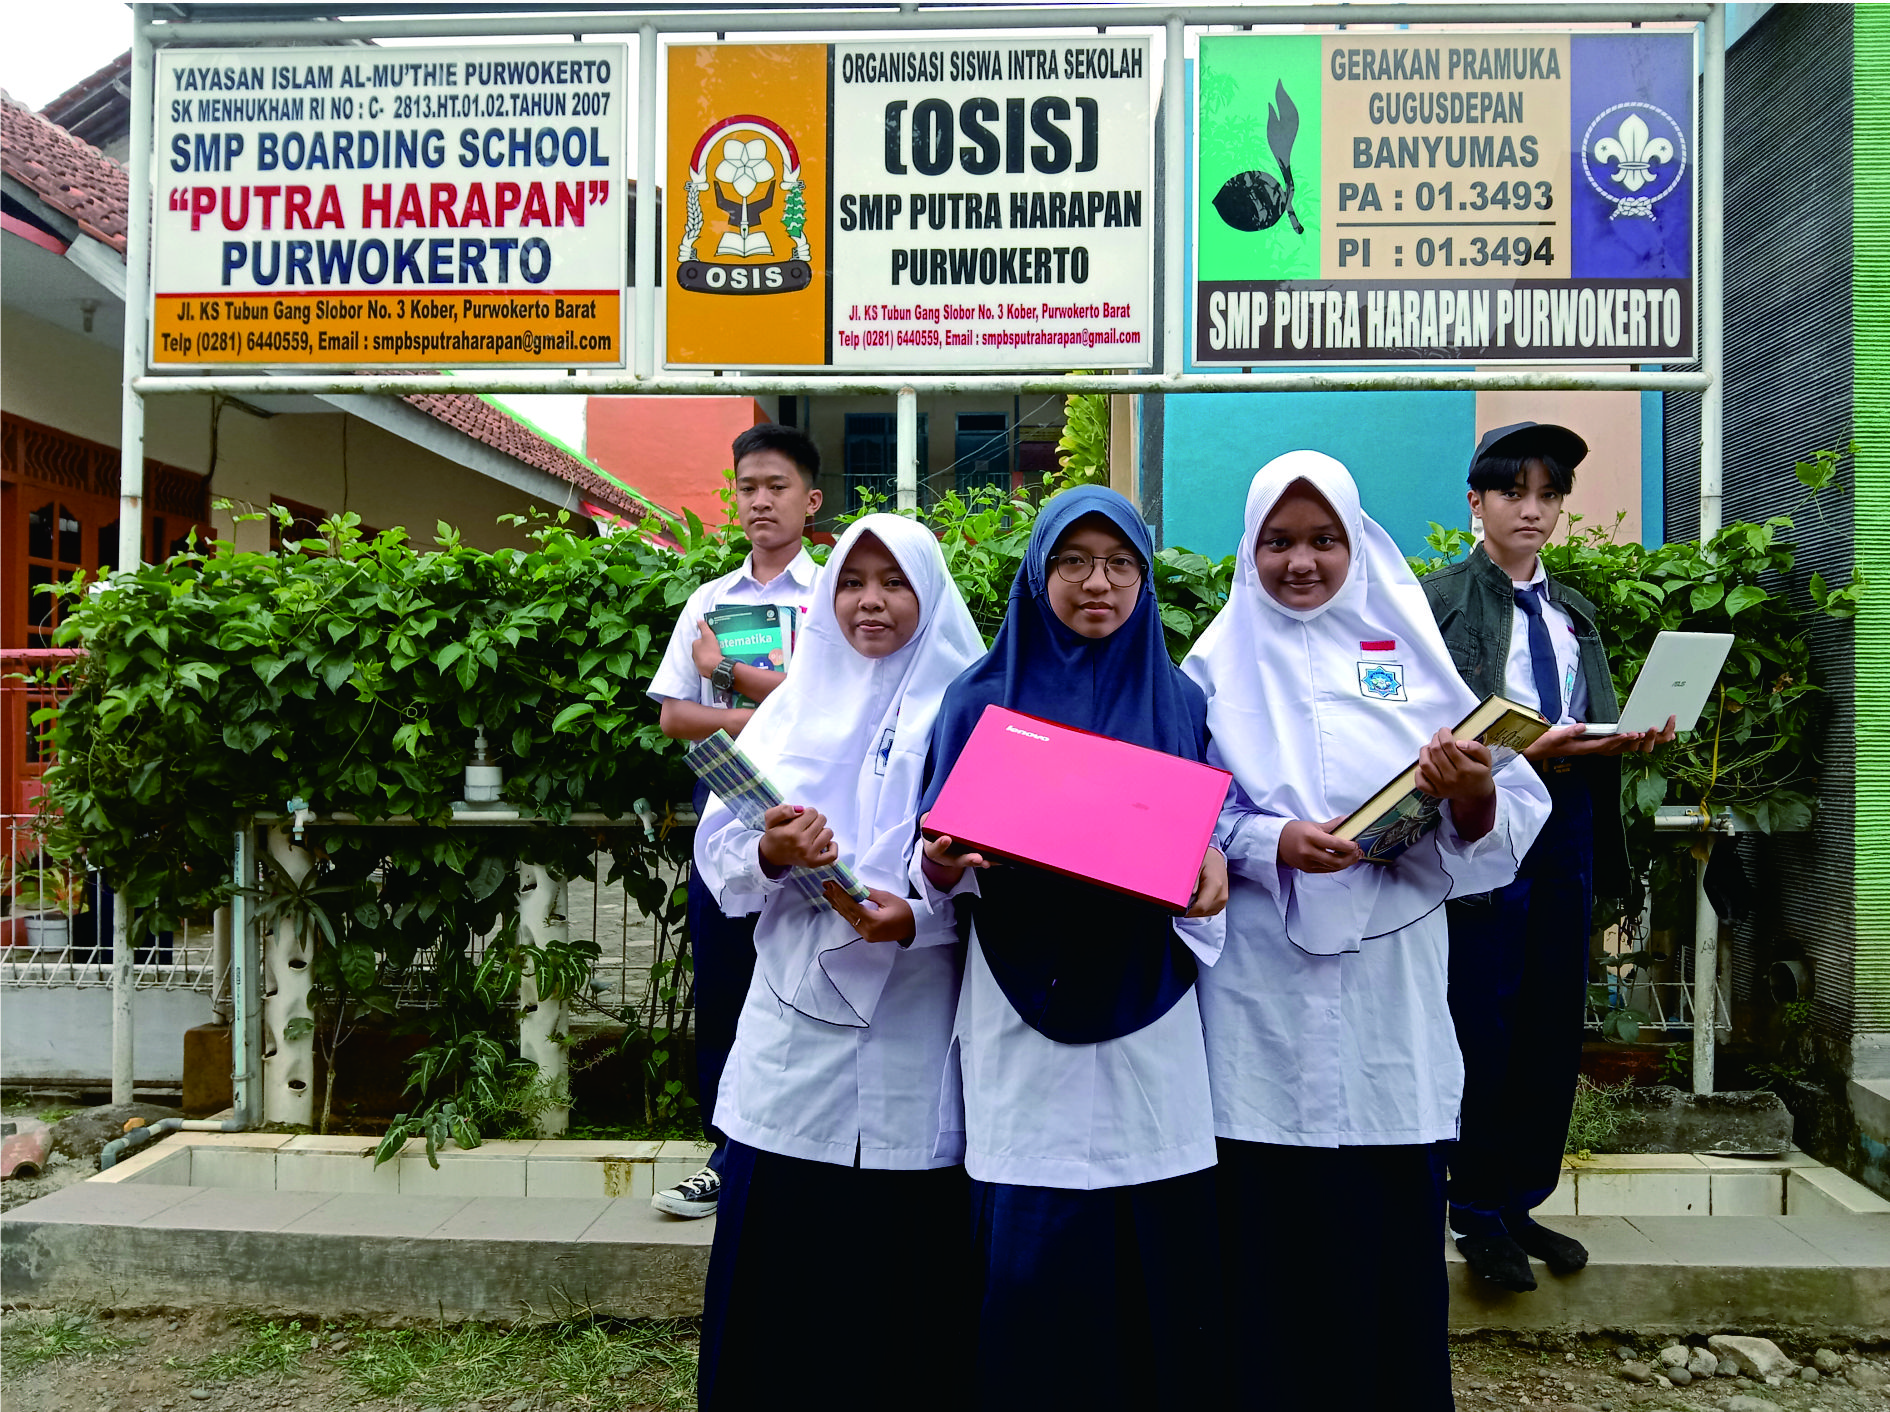 Foto SMP  Boarding School Putra Harapan Purwokerto, Kab. Banyumas